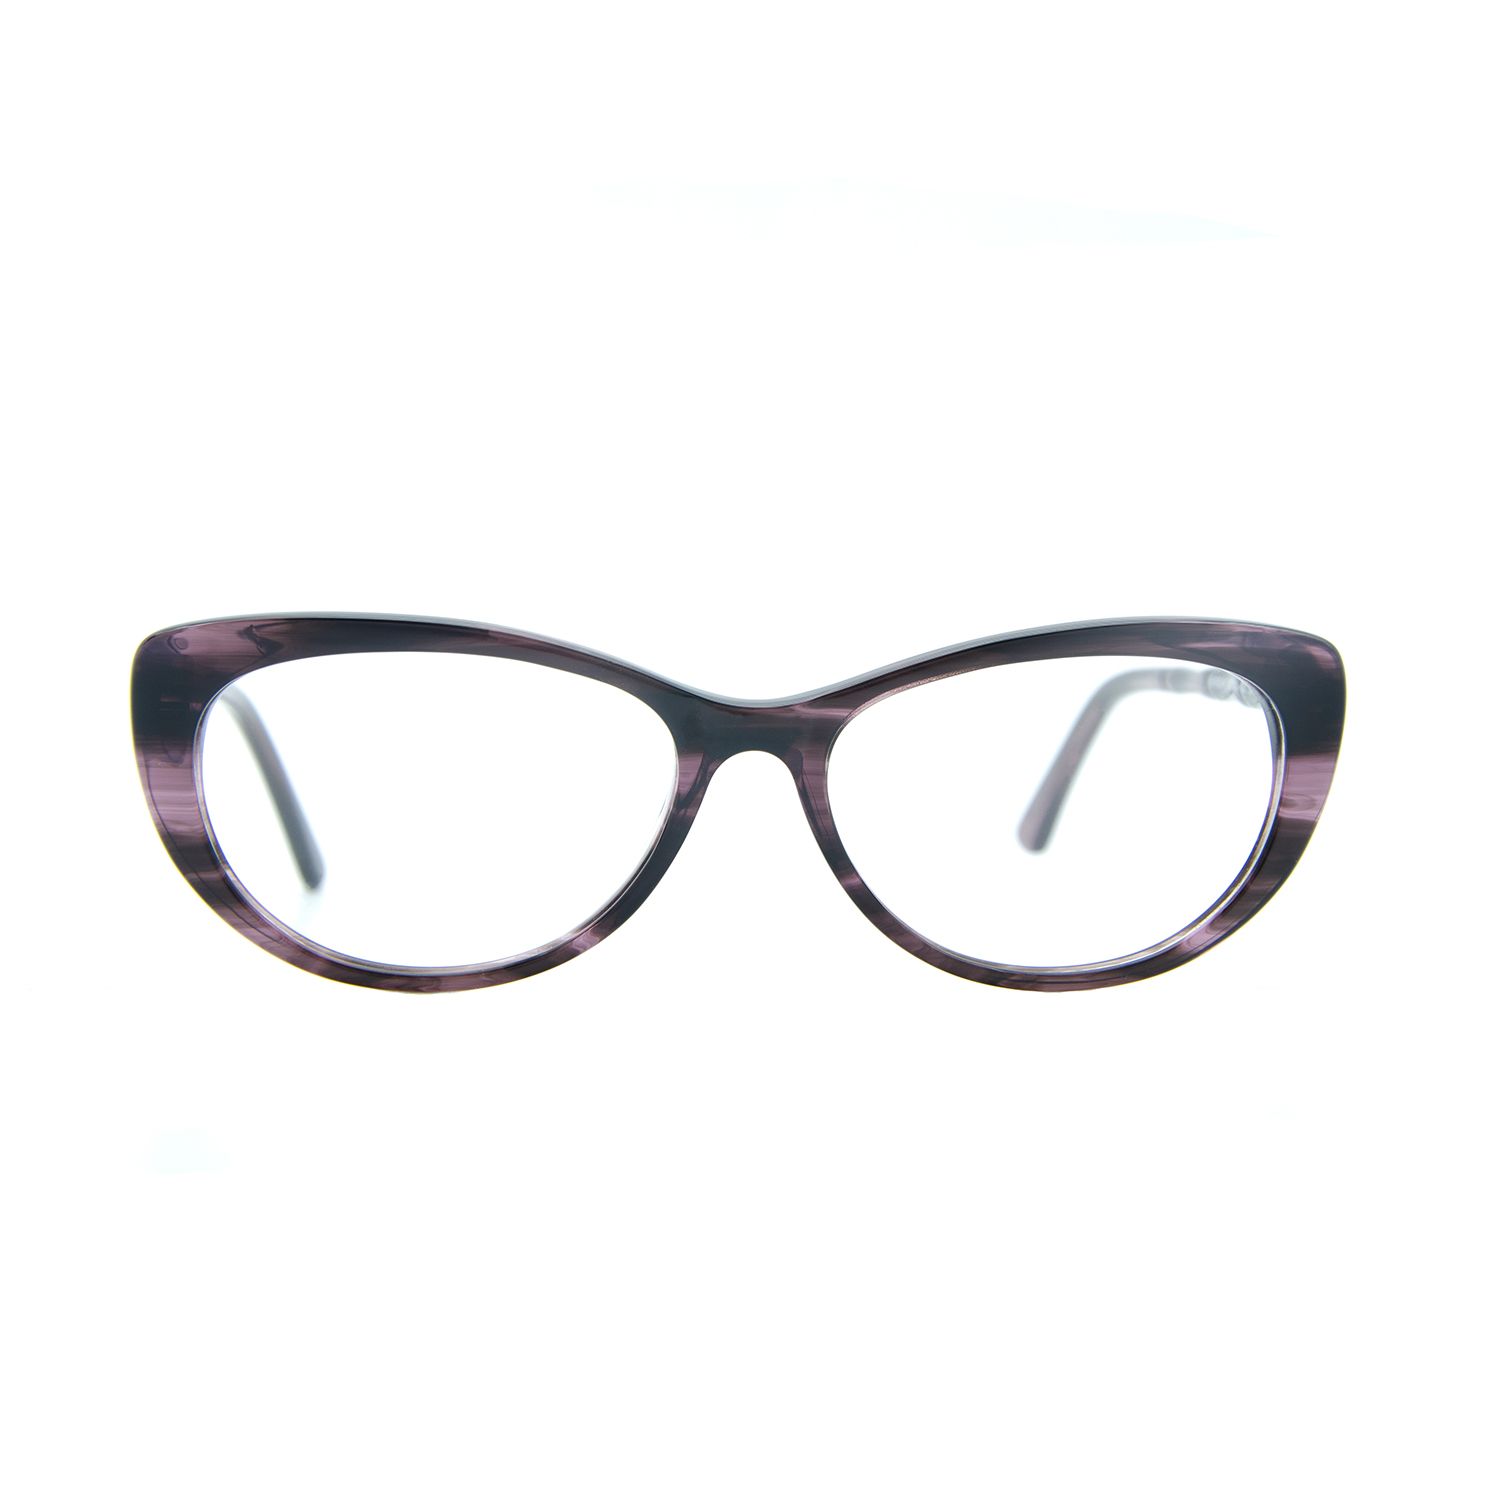 فریم عینک طبی ام اند او مدل Noah-c4 -  - 2